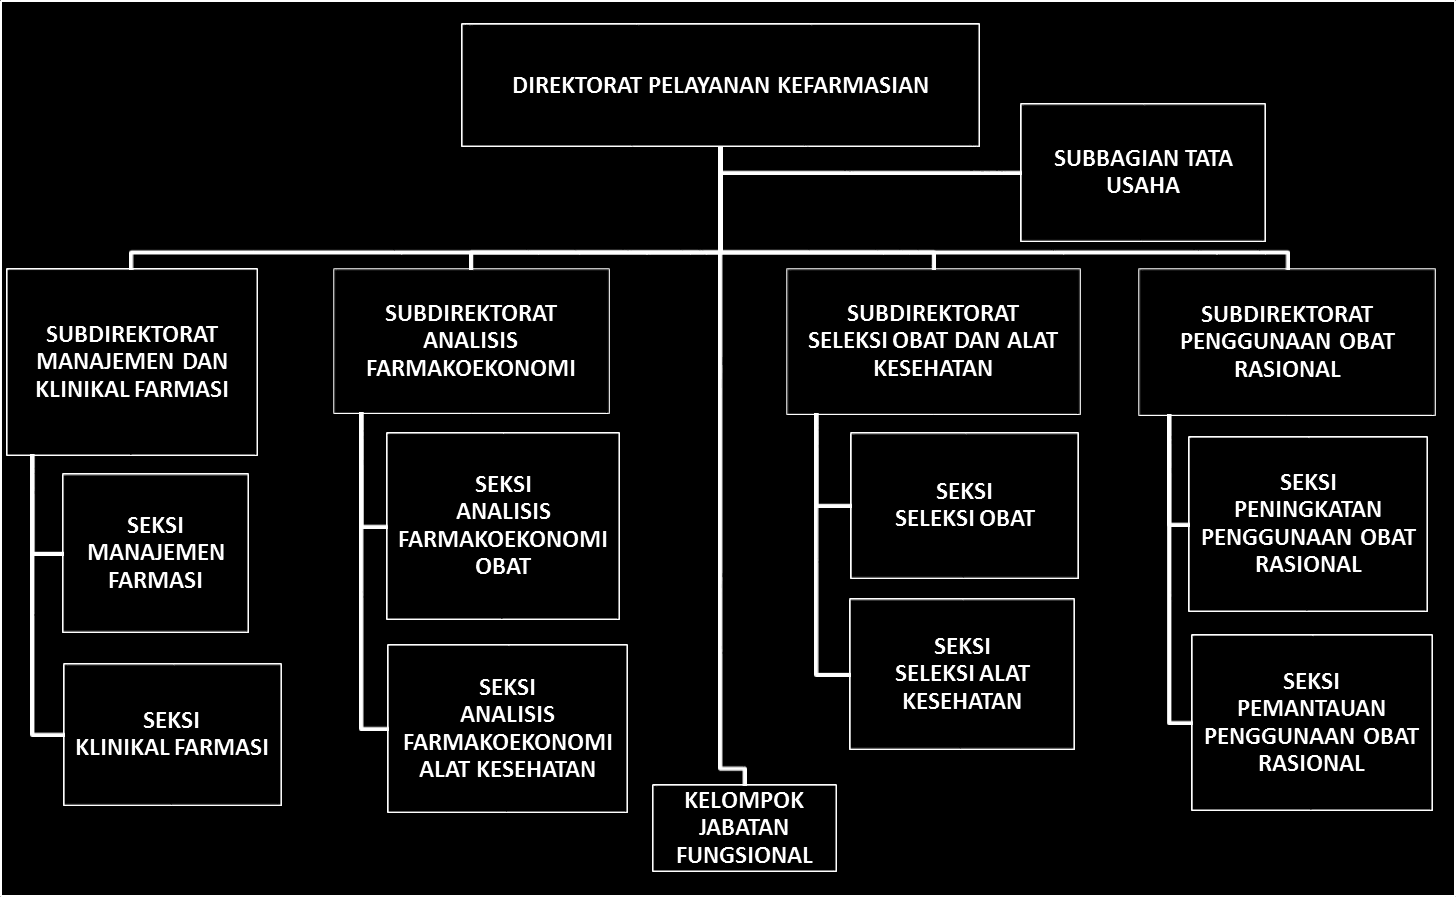 Susunan Struktur Organisasi Direktorat Pelayanan Kefarmasian berdasarkan Peraturan Menteri Kesehatan Republik Indonesia Nomor 64 Tahun 2015 tentang Organisasi dan Tata Kerja Kementerian Kesehatan